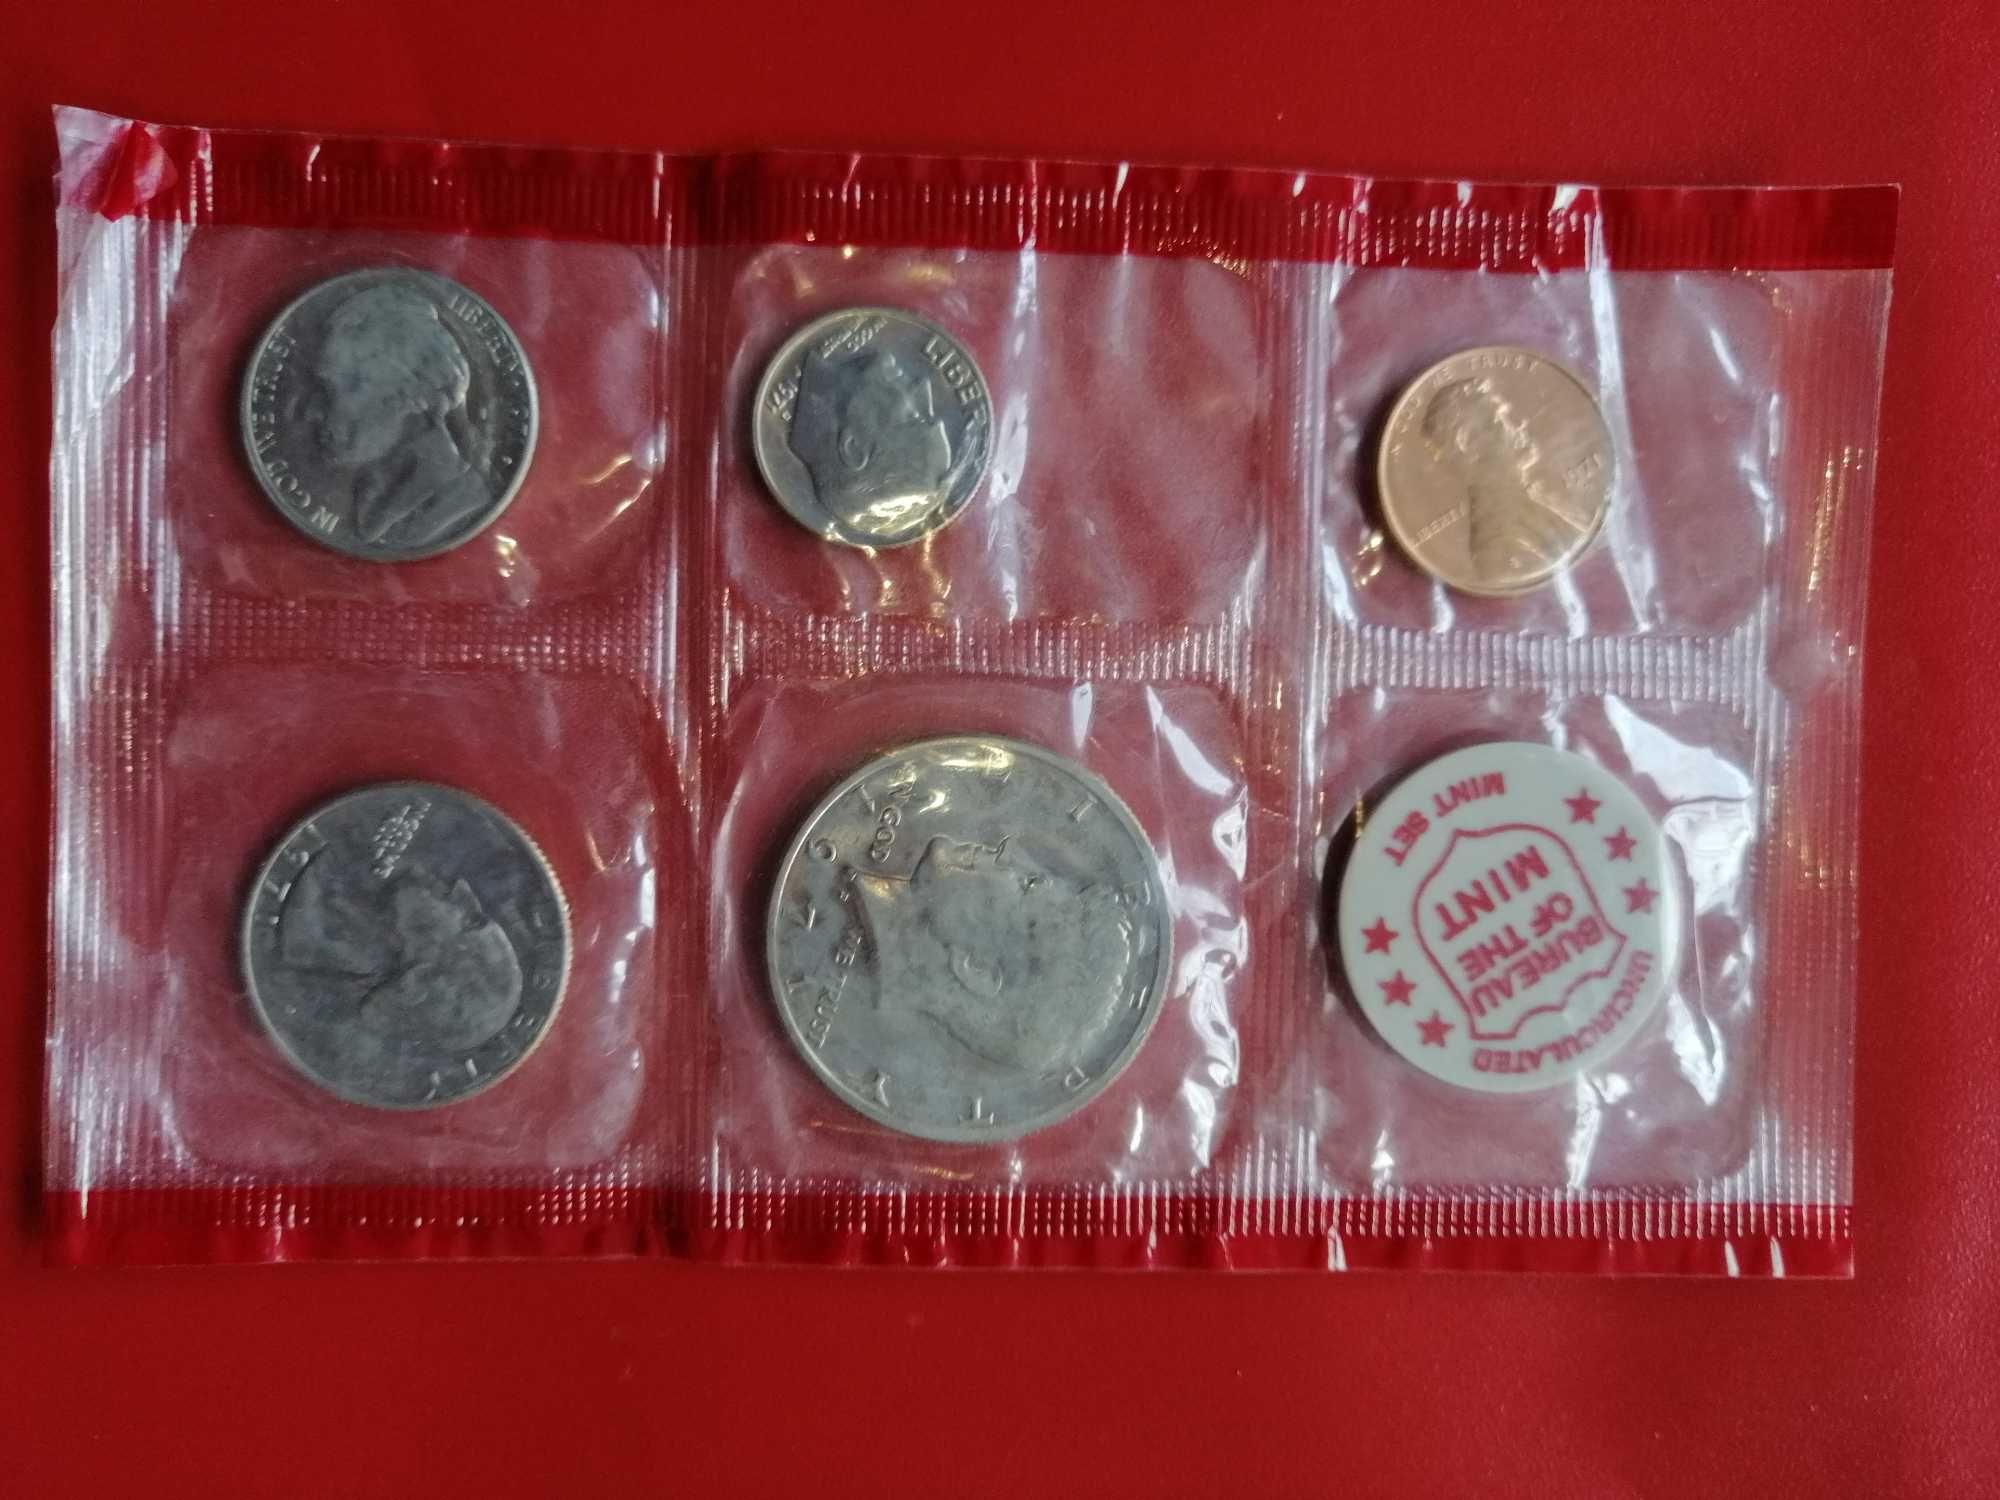 Vand 5 monede US 1989 si 1971 set P&D mints